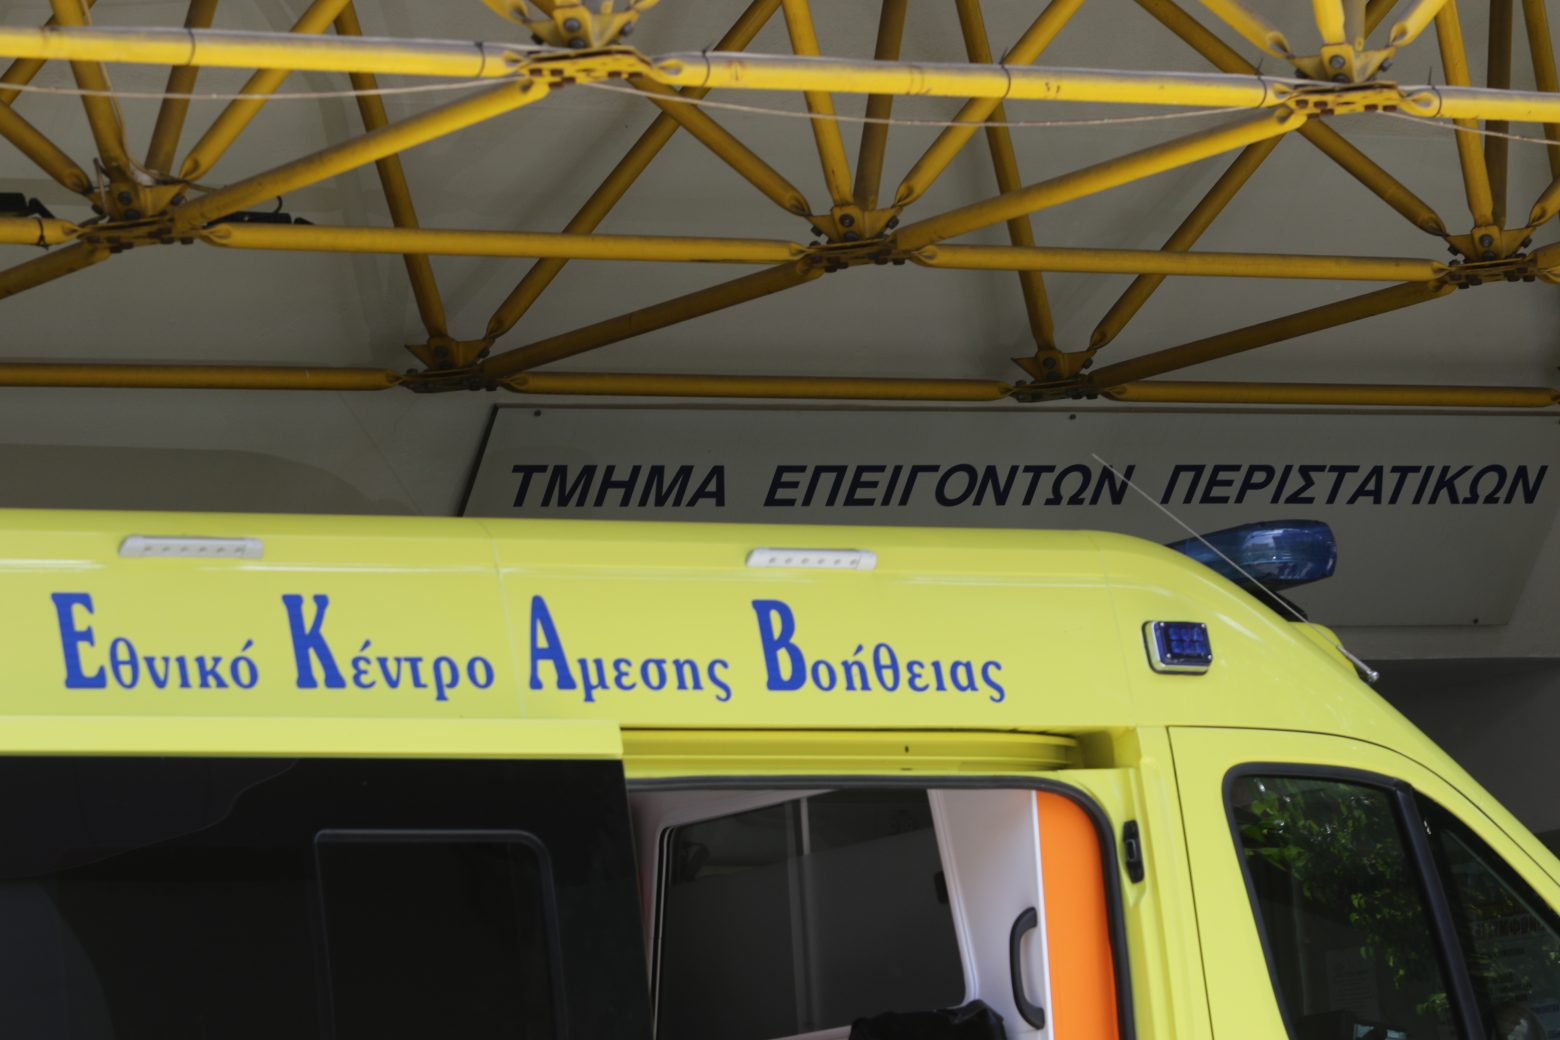 Θεσσαλονίκη - 45χρονος κρεμάστηκε σε αποθήκη όπου εργαζόταν